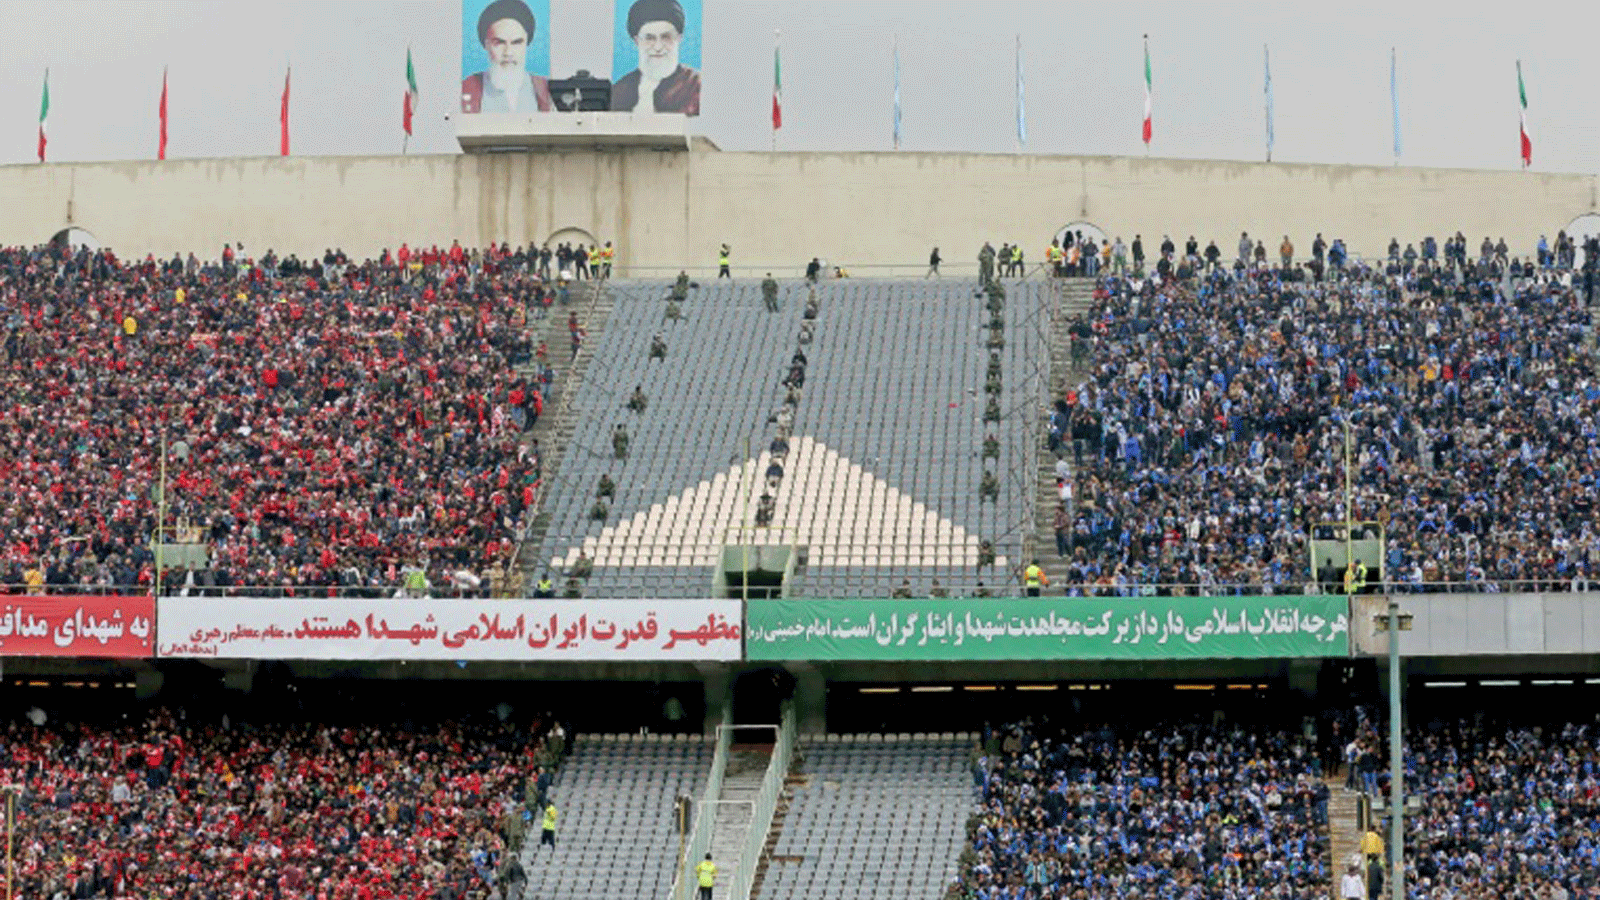 مشجعو ناديي استقلال (يمين) وبرسبوليس (يسار) خلال مواجهة الفريقين على استاد أزادي في العاصمة طهران في 12 شباط/فبراير 2017